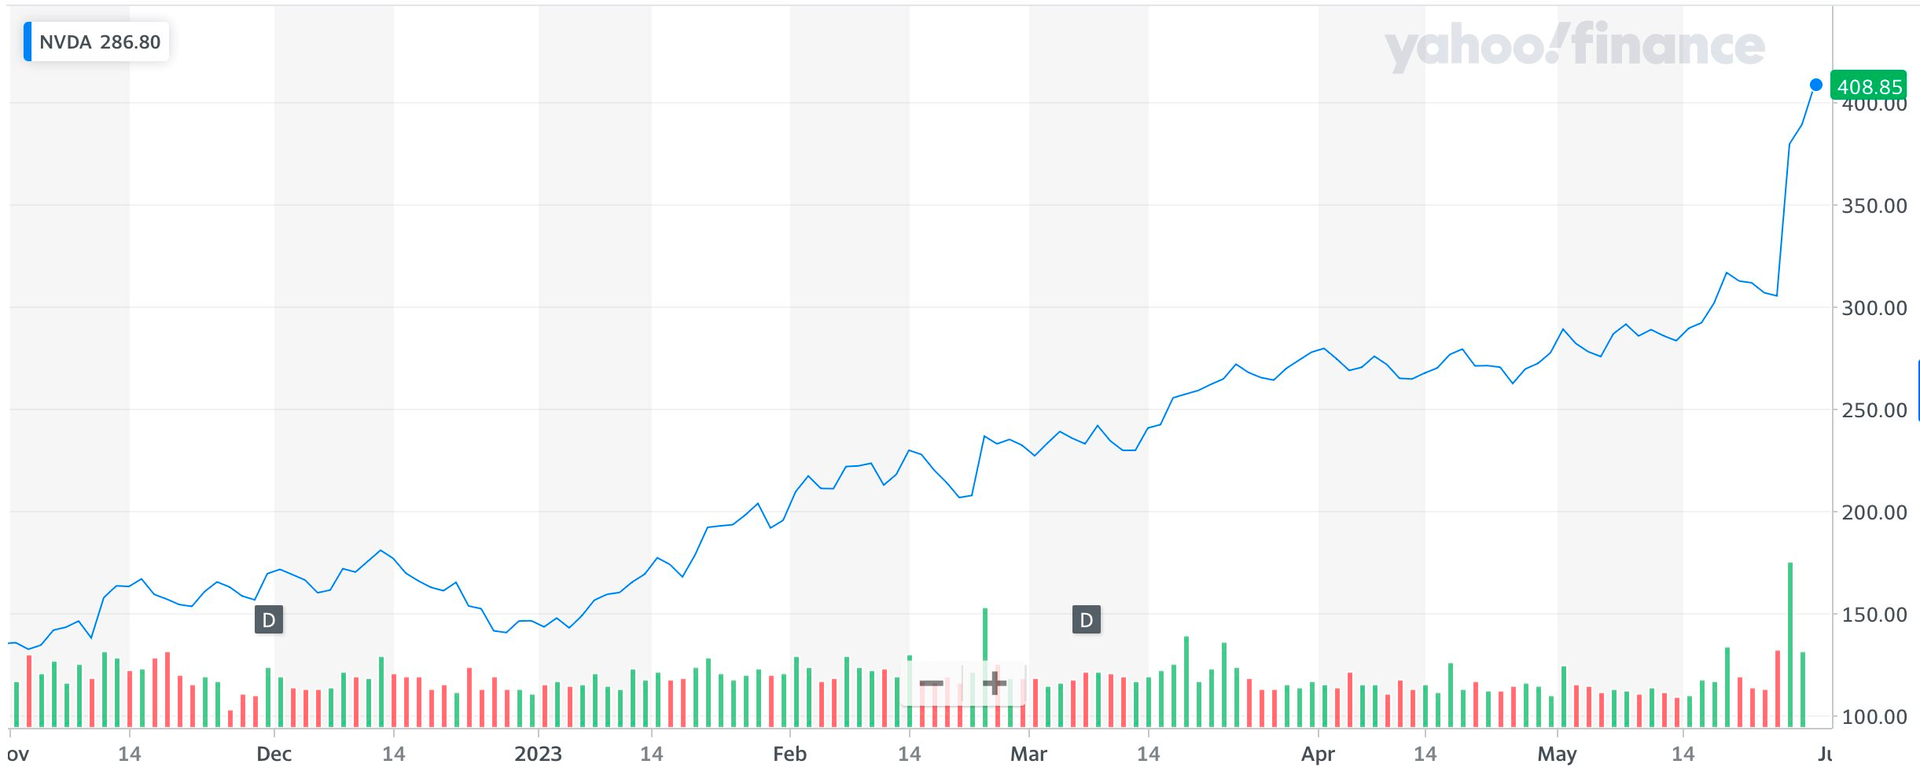 Cổ phiếu tăng bùng nổ từ đầu năm, Nvidia chính thức cán mốc vốn hoá 1 nghìn tỷ USD - Ảnh 1.